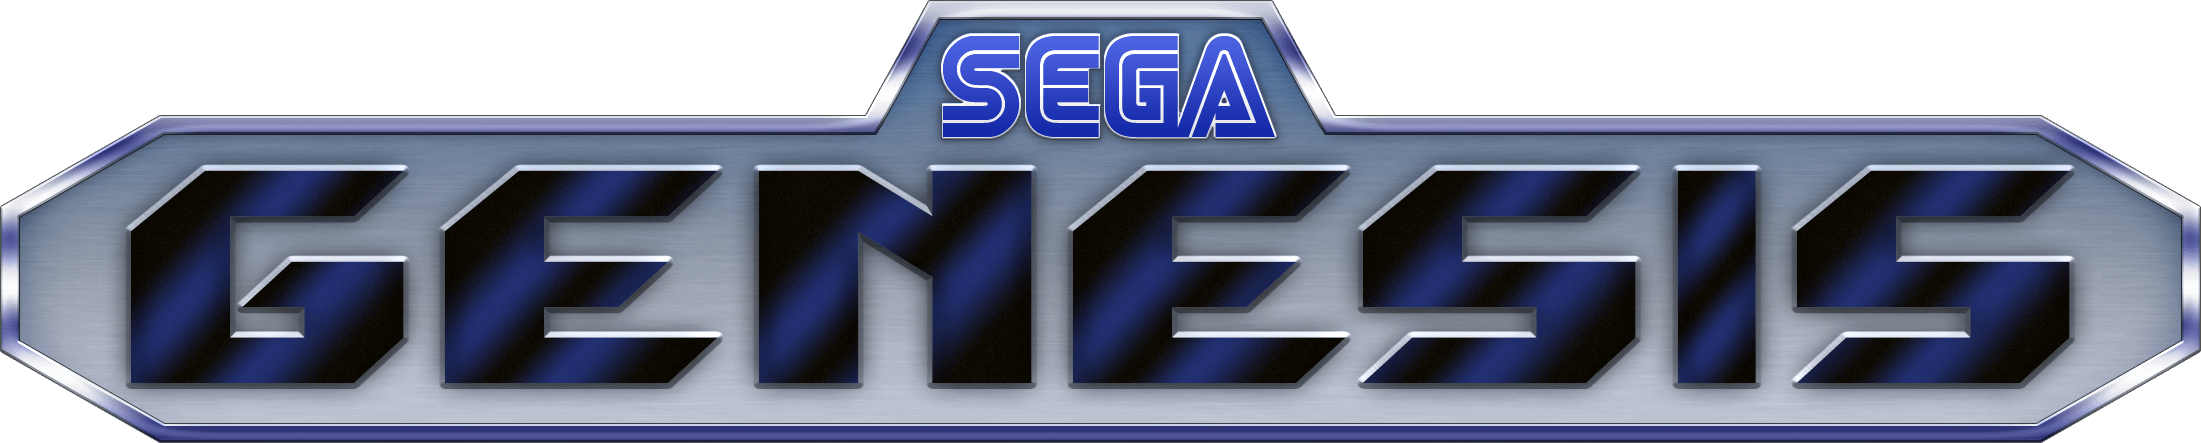 Sega Genesis Logo - Sega Genesis Logo